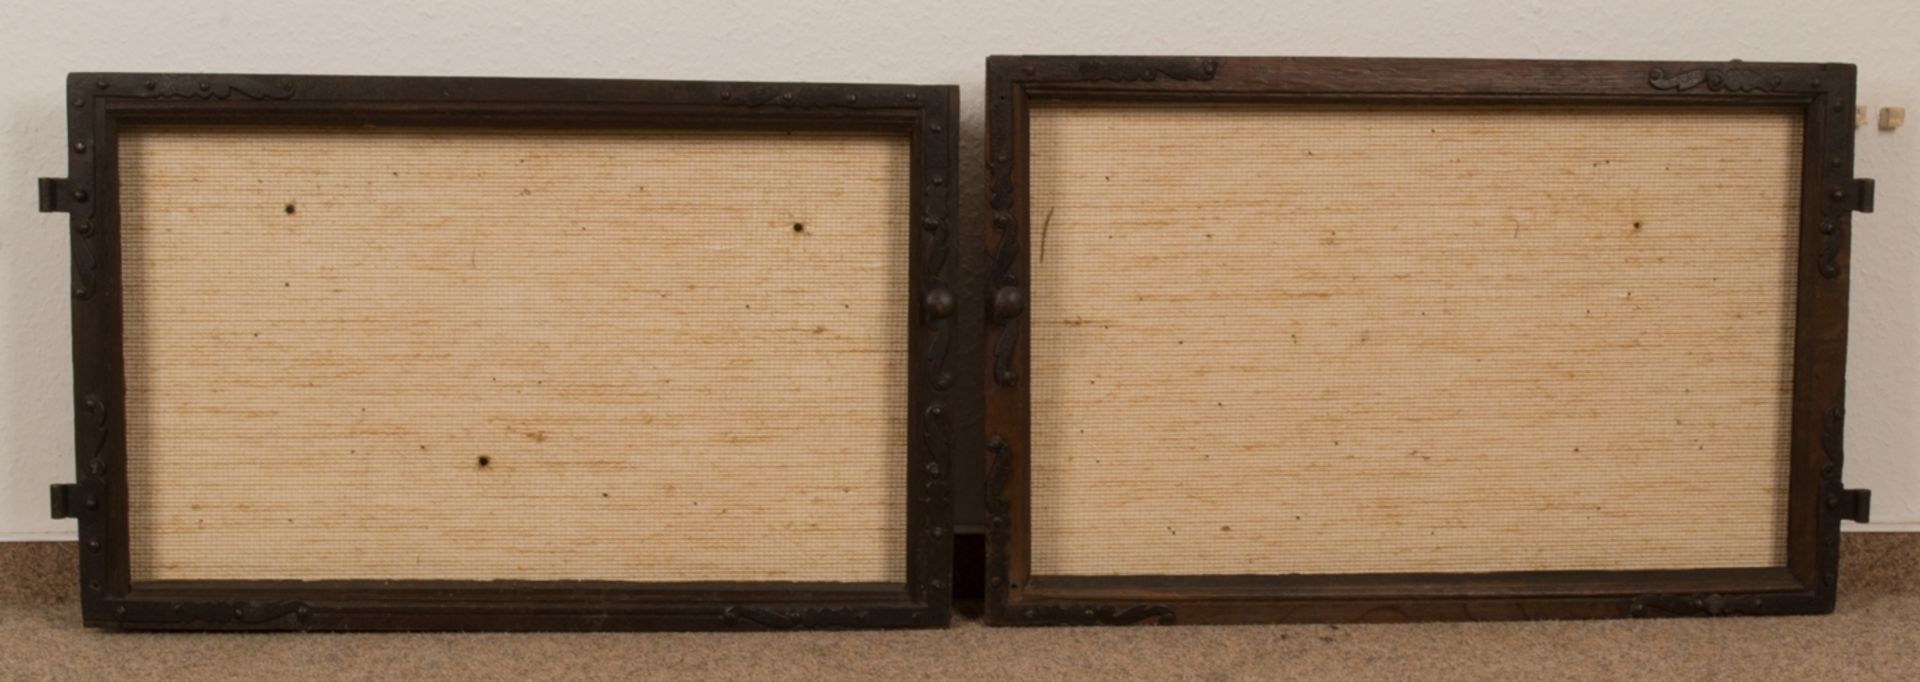 Paar antiker Fensterrahmen, 19./20. Jhd., zur Wandaufhängung umgearbeitet. Max. Außenmaß ca. 46 x 73 - Bild 2 aus 7